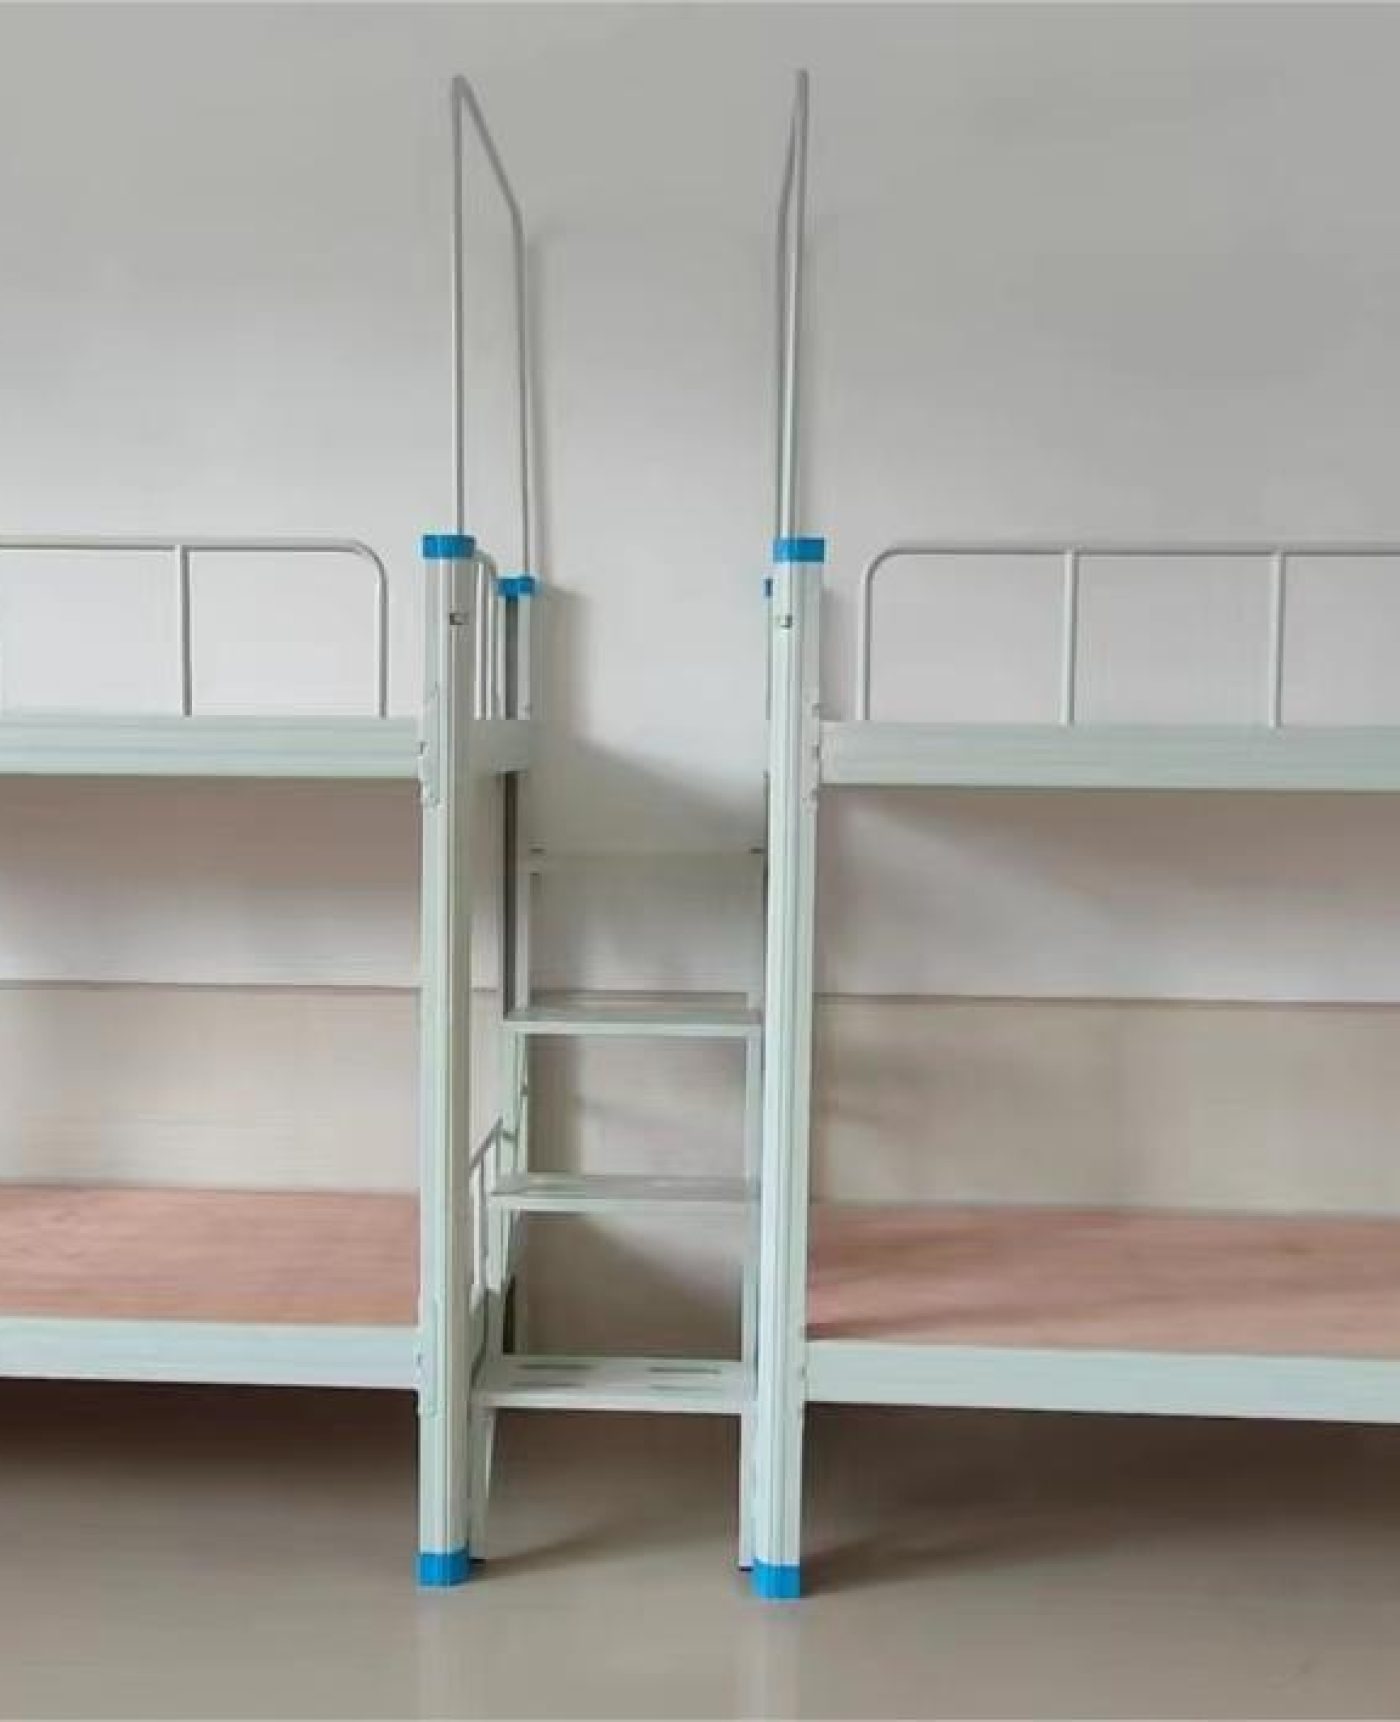 东莞一中学采用了最新款双层床